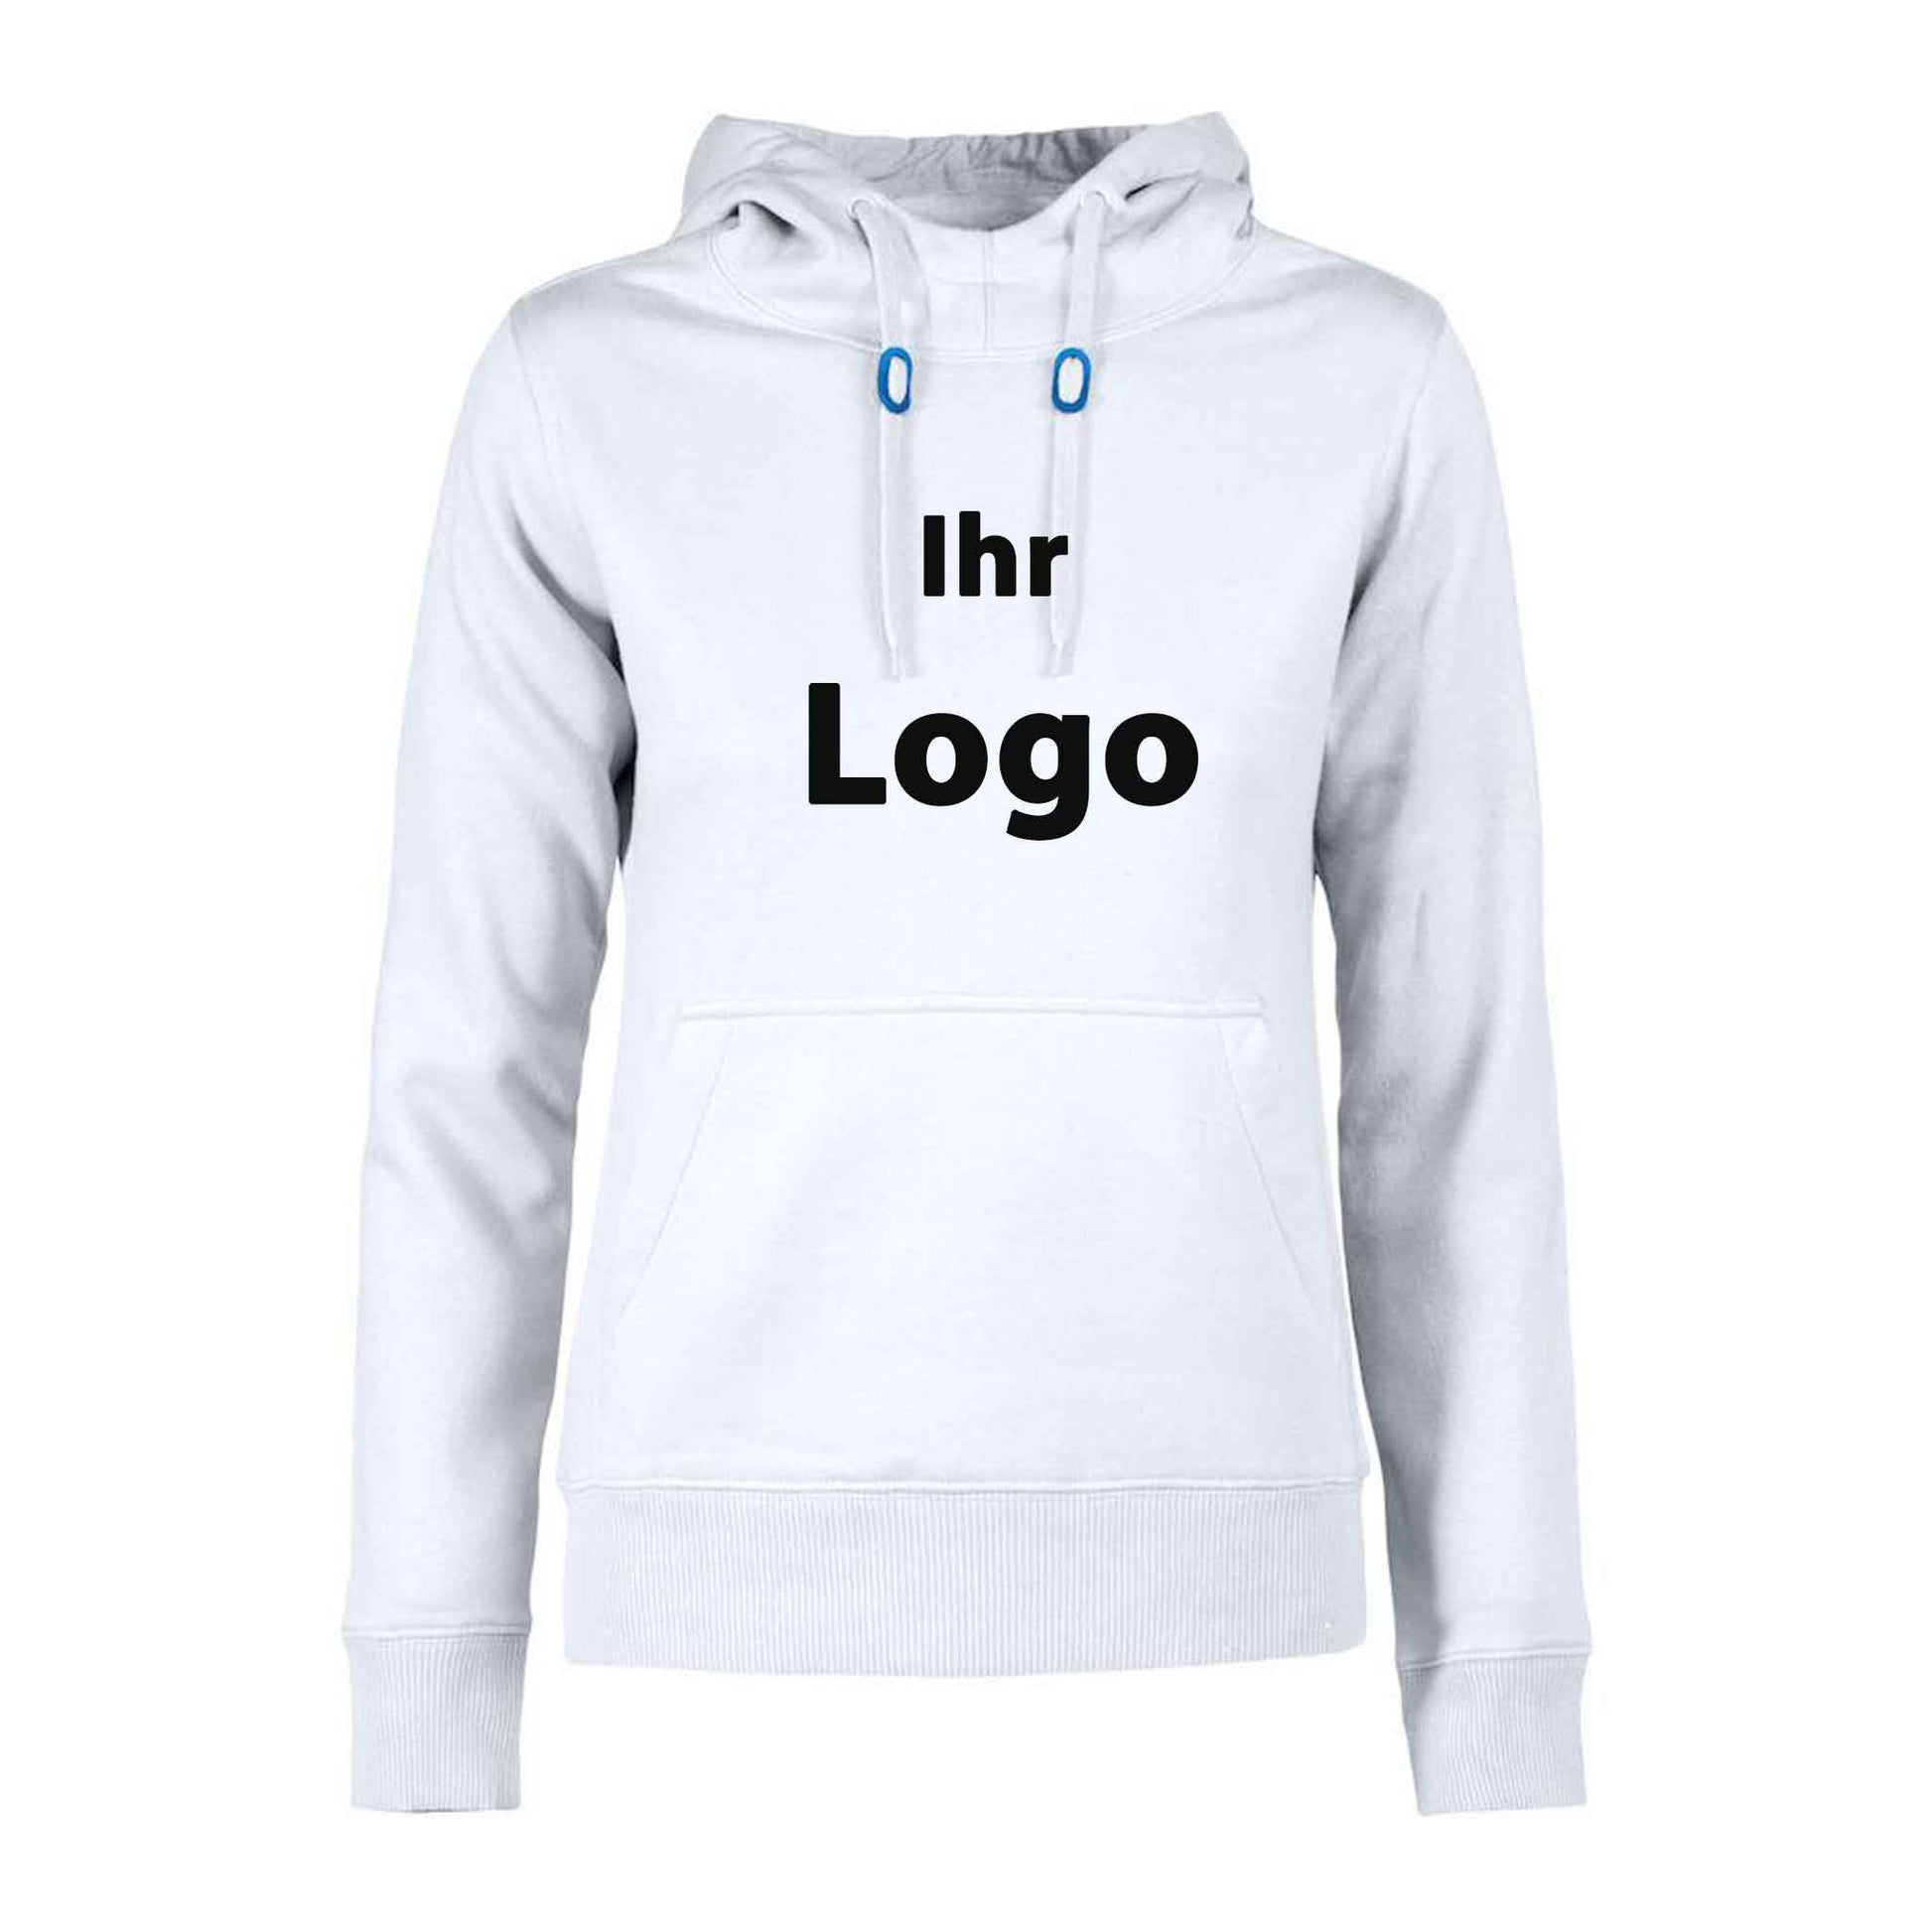 Taillierter Damen Hoodie - Individuell mit Ihrem Logo bestickt oder bedruckt